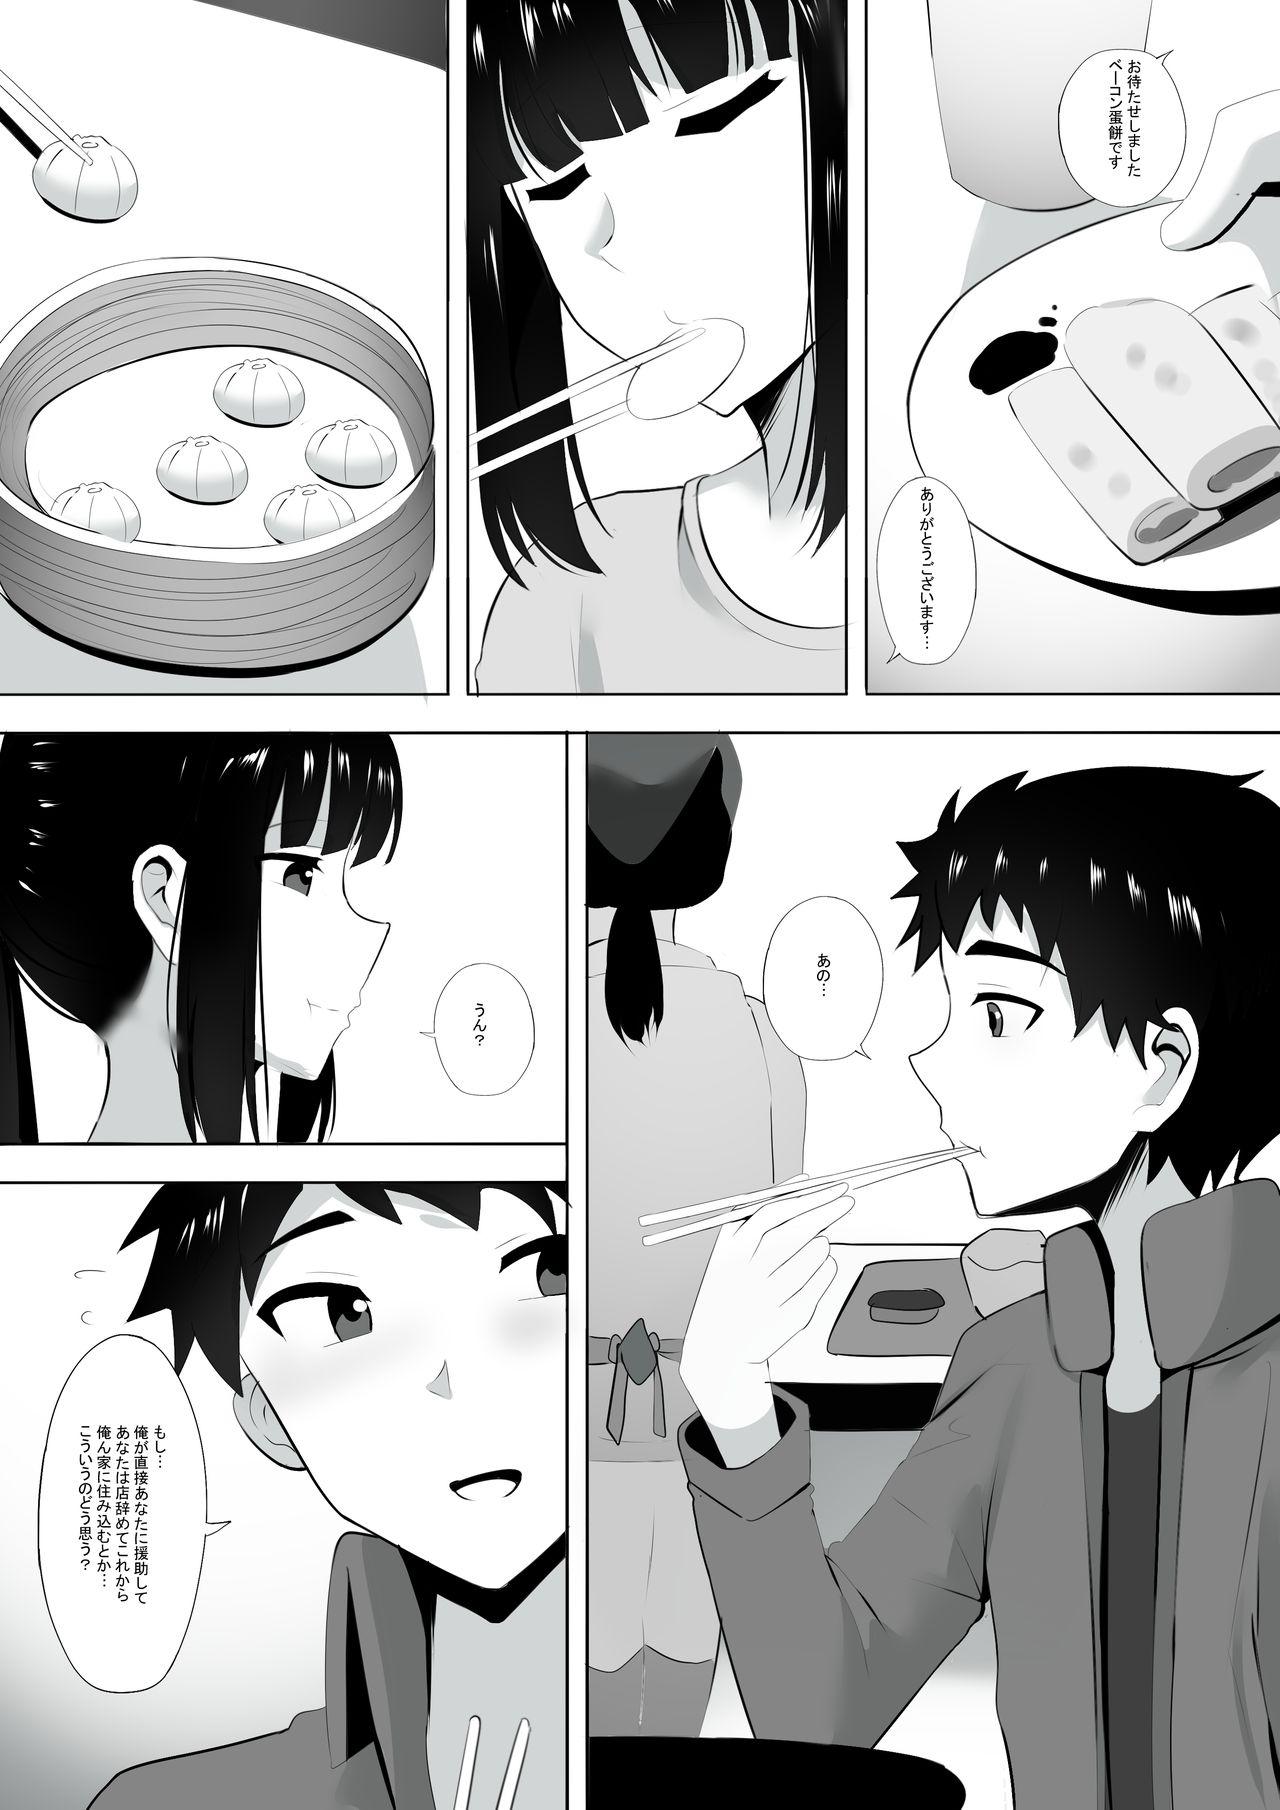 No Condom Menesu de Osananajimi to Masaka no Saikai de Daibakusha 3 - Original Straight - Page 5